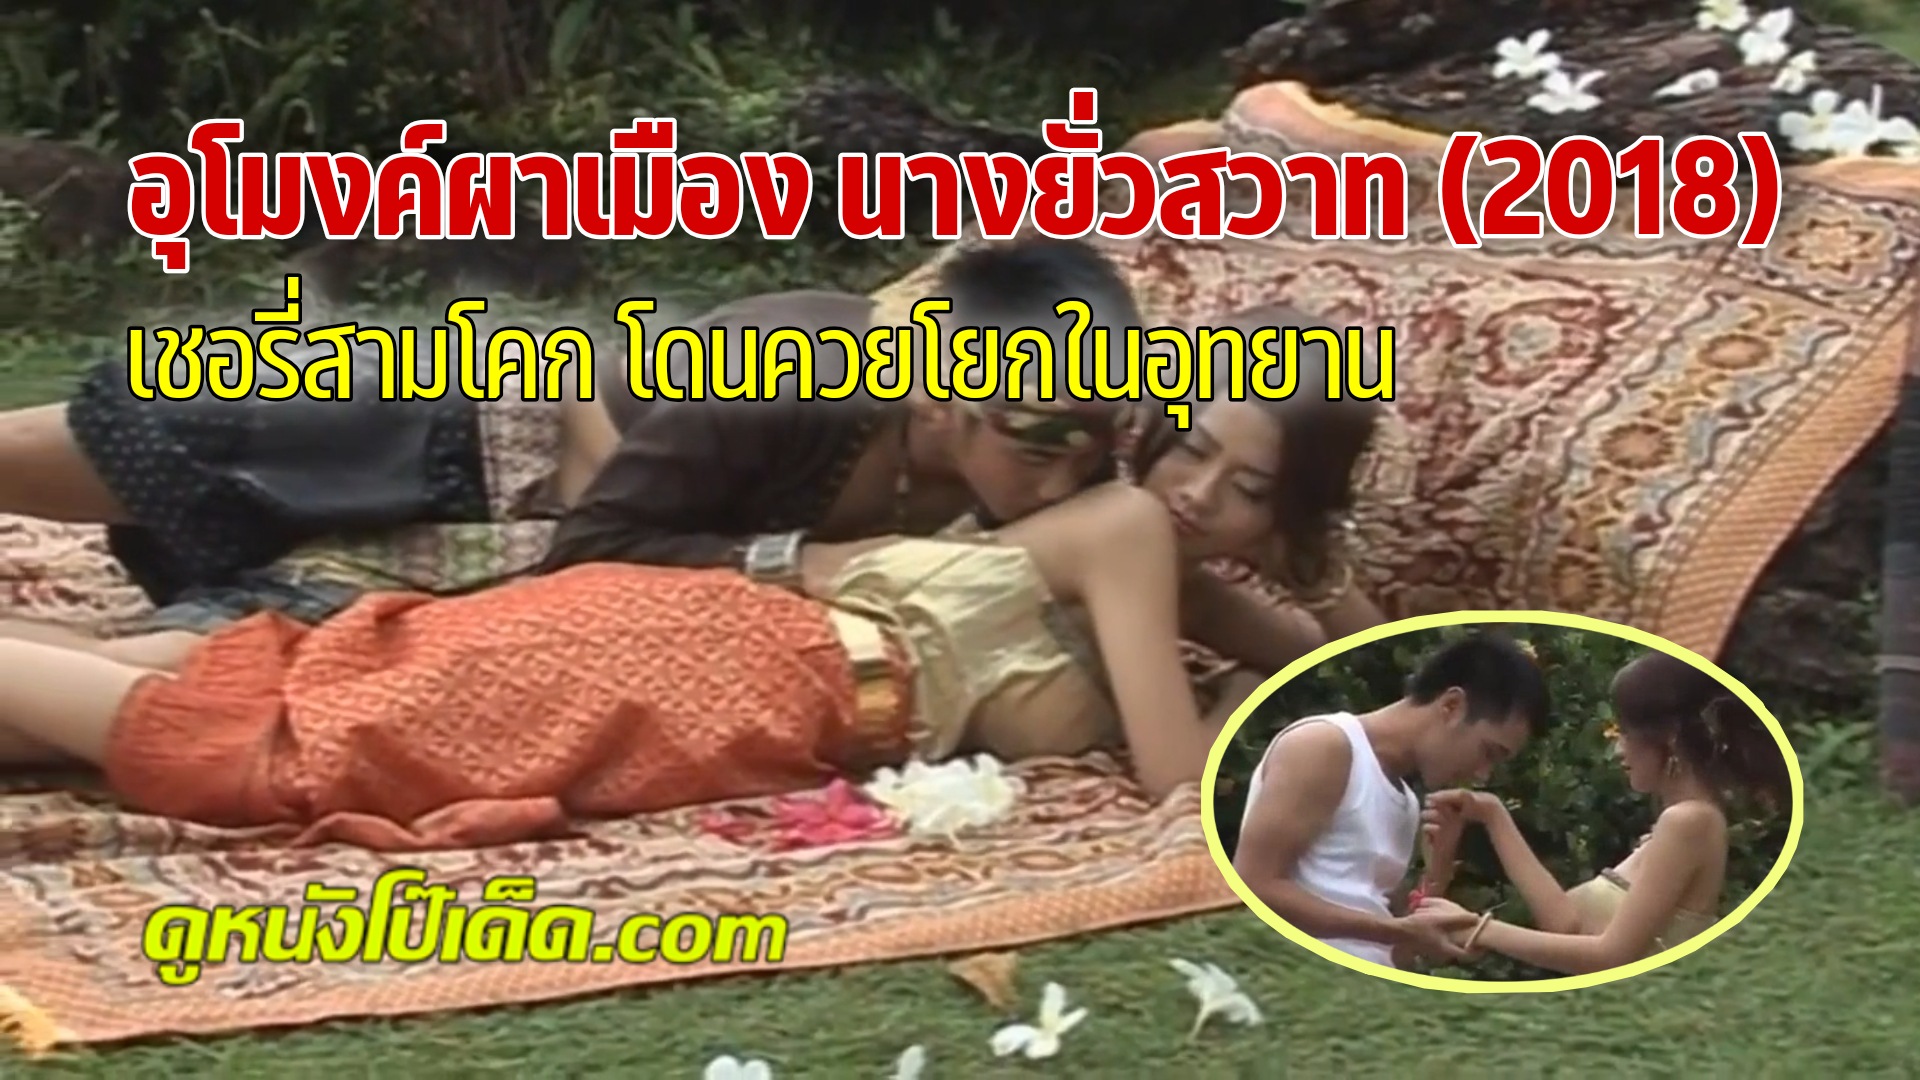 หนังอาร์ไทยเต็มเรื่อง (อุโมงค์ผาเมือง นางยั่วสวาท) Umong Pha Muang Nang Yua Sawat 2011 นางยั่วเชอรี่ สามโคก สวมผ้าถุงขึ้นเตียงกับชู้หนุ่มนอกเมือง ที่เคยเป็นสามีของดุจดาว ดวงประดับ การเย็ดครั้งนี้แหกหีโยกควยเพื่อชำระแค้นเพื่อนสารเลว